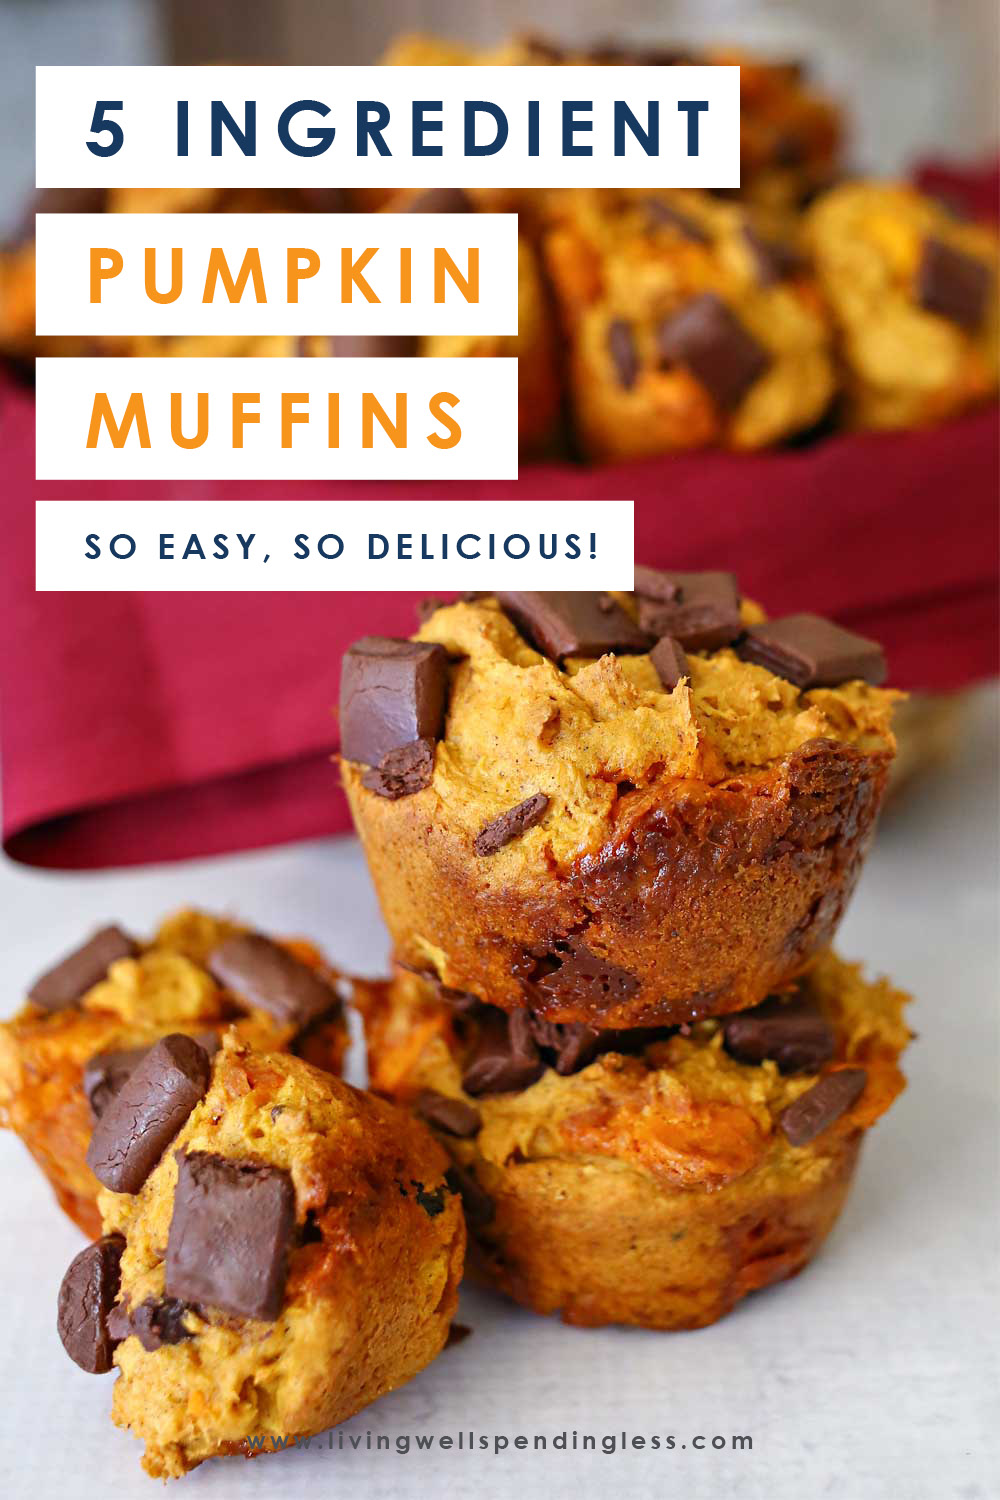 5 Ingredient Pumpkin Muffins | Easy + Delicious Pumpkin Muffin Recipe